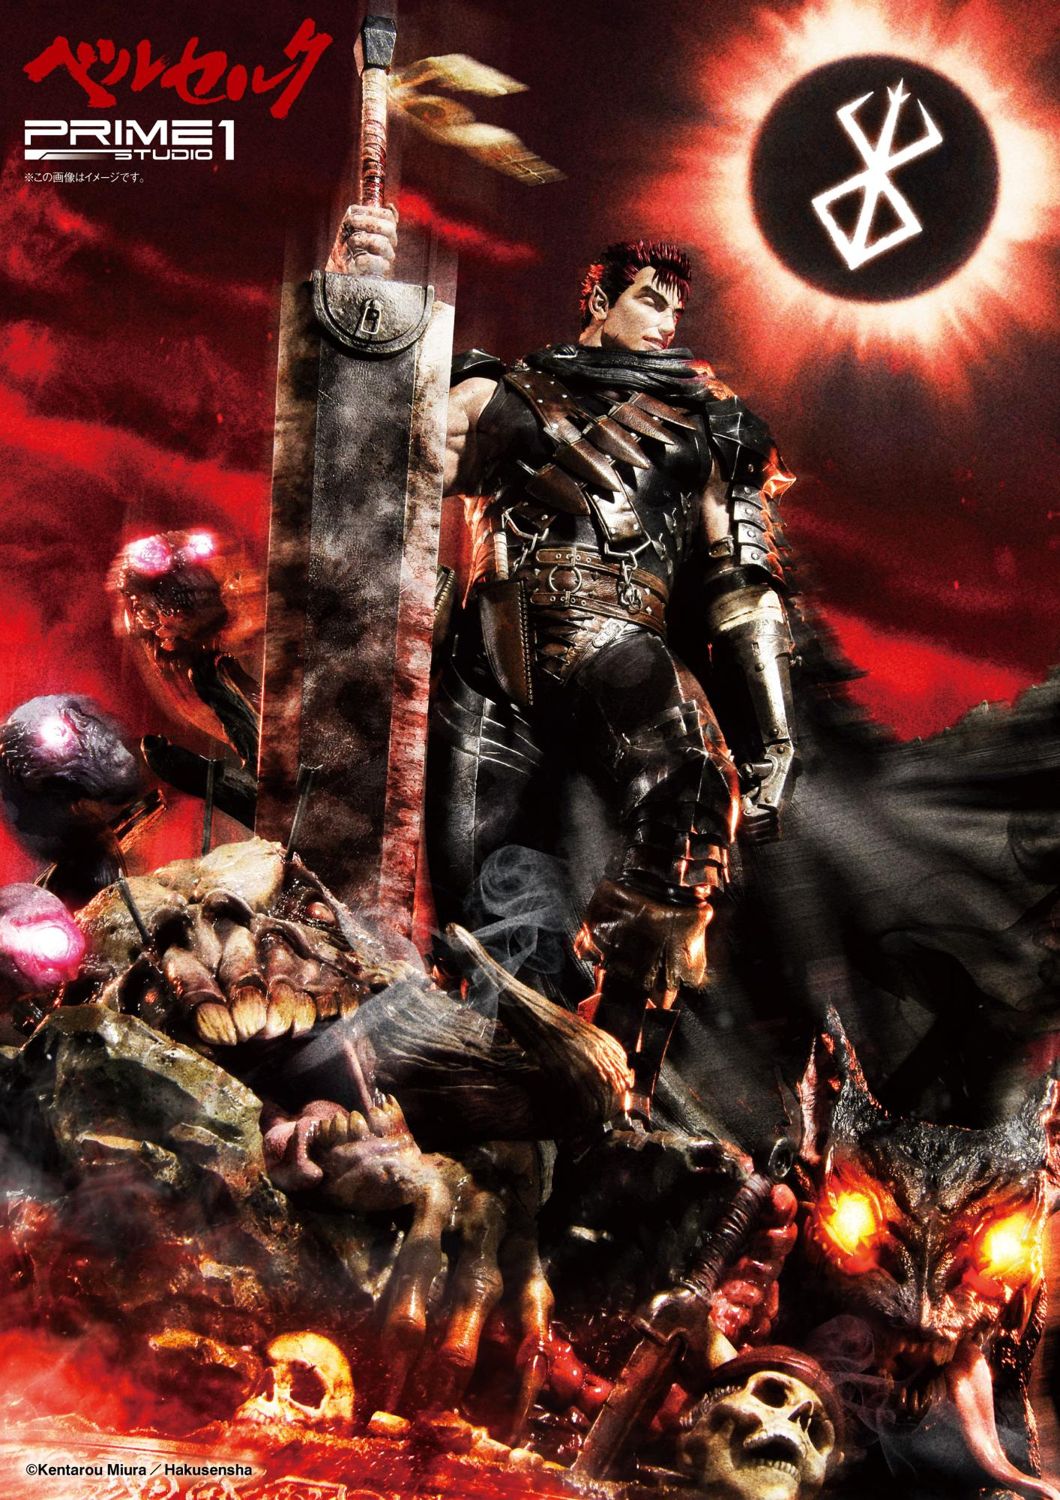 Berserk Episode 1 - The Branded Swordsman Review - IGN